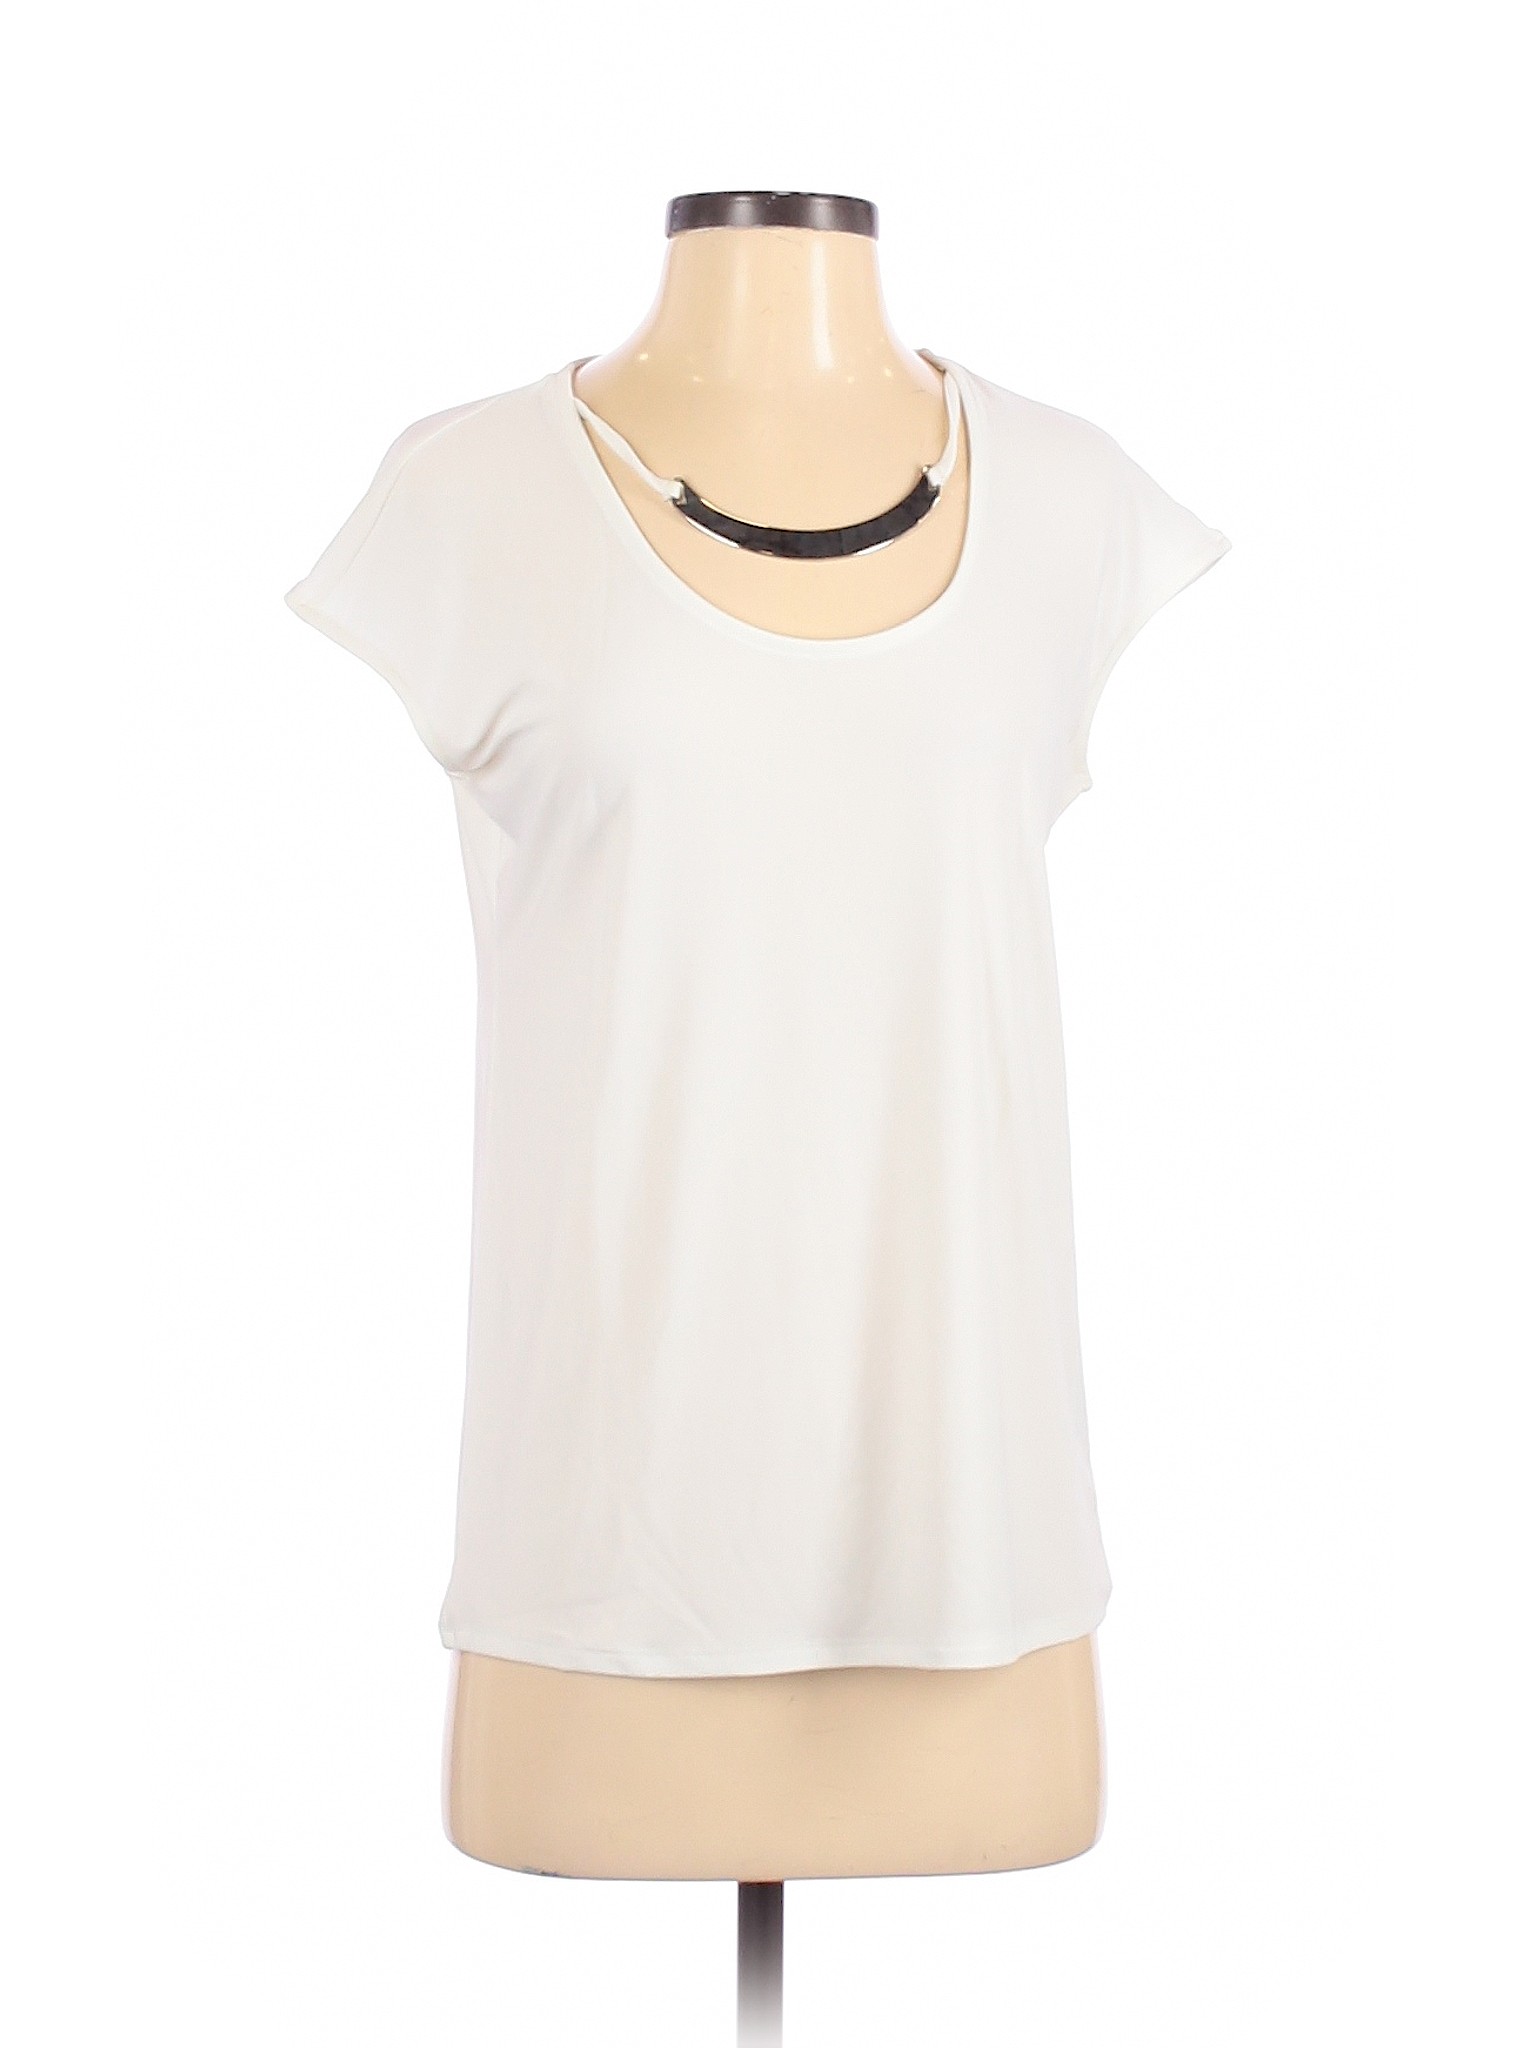 White House Black Market Women White Short Sleeve Top XS | eBay